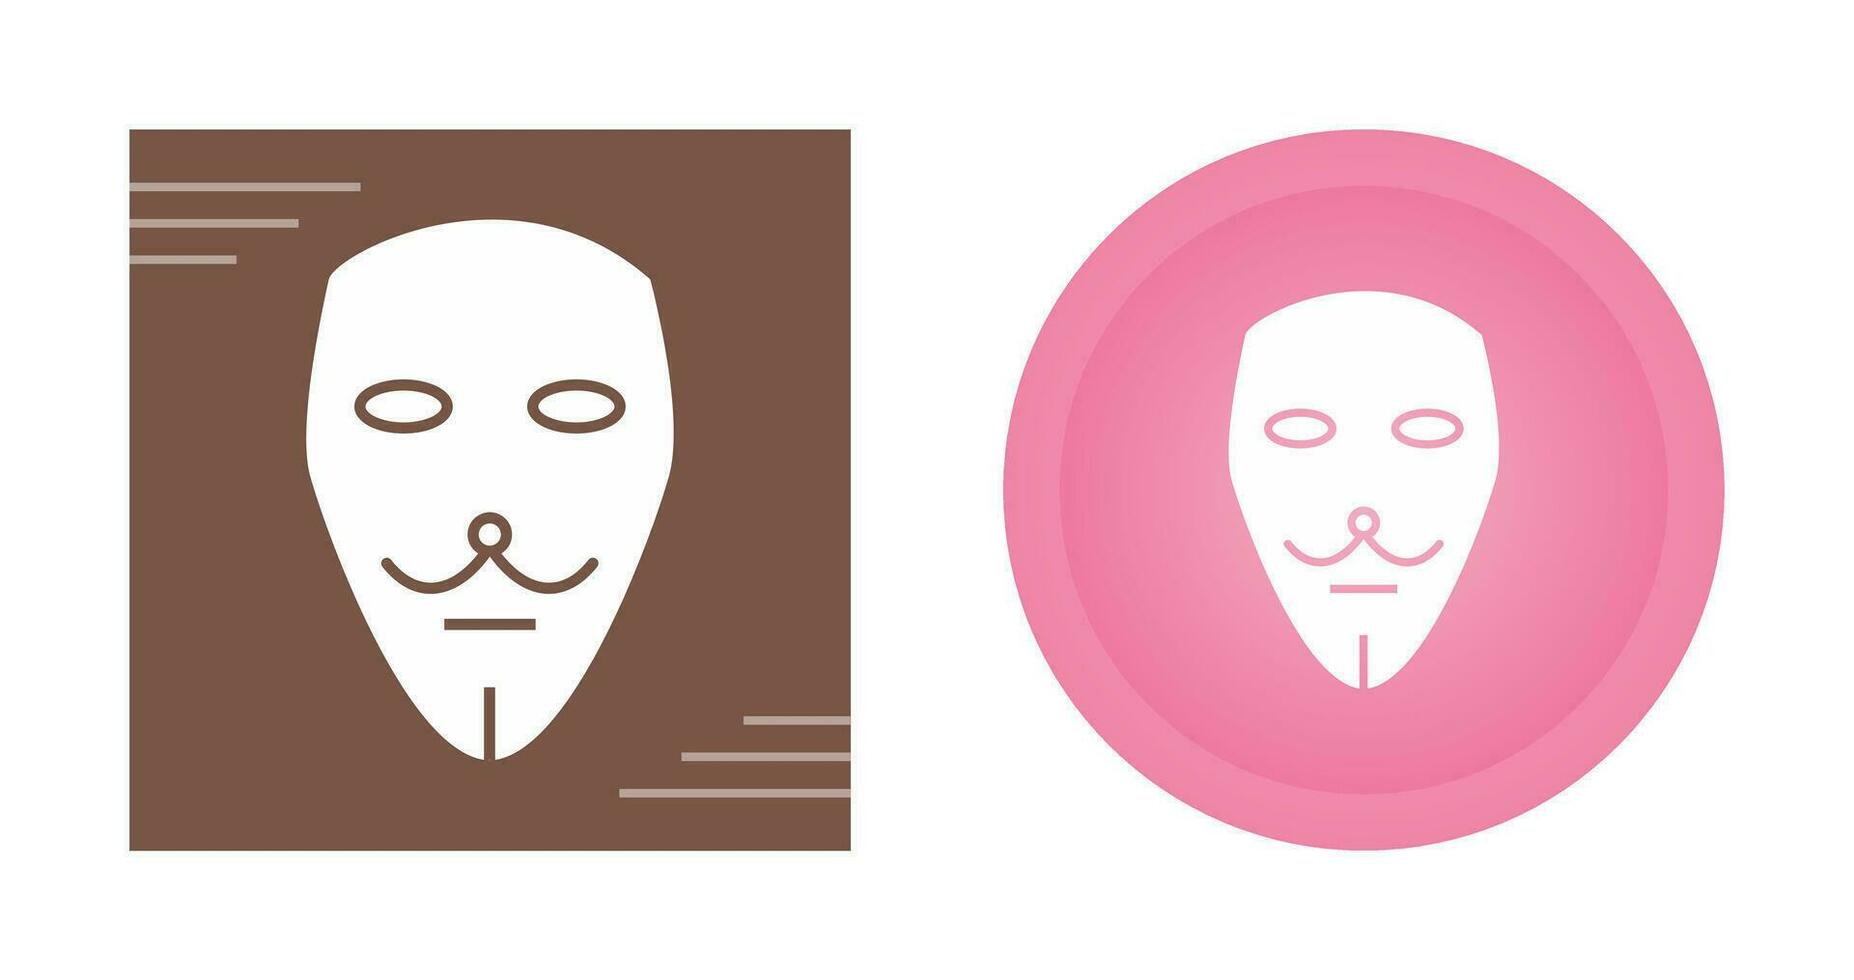 icône de vecteur de deux masques